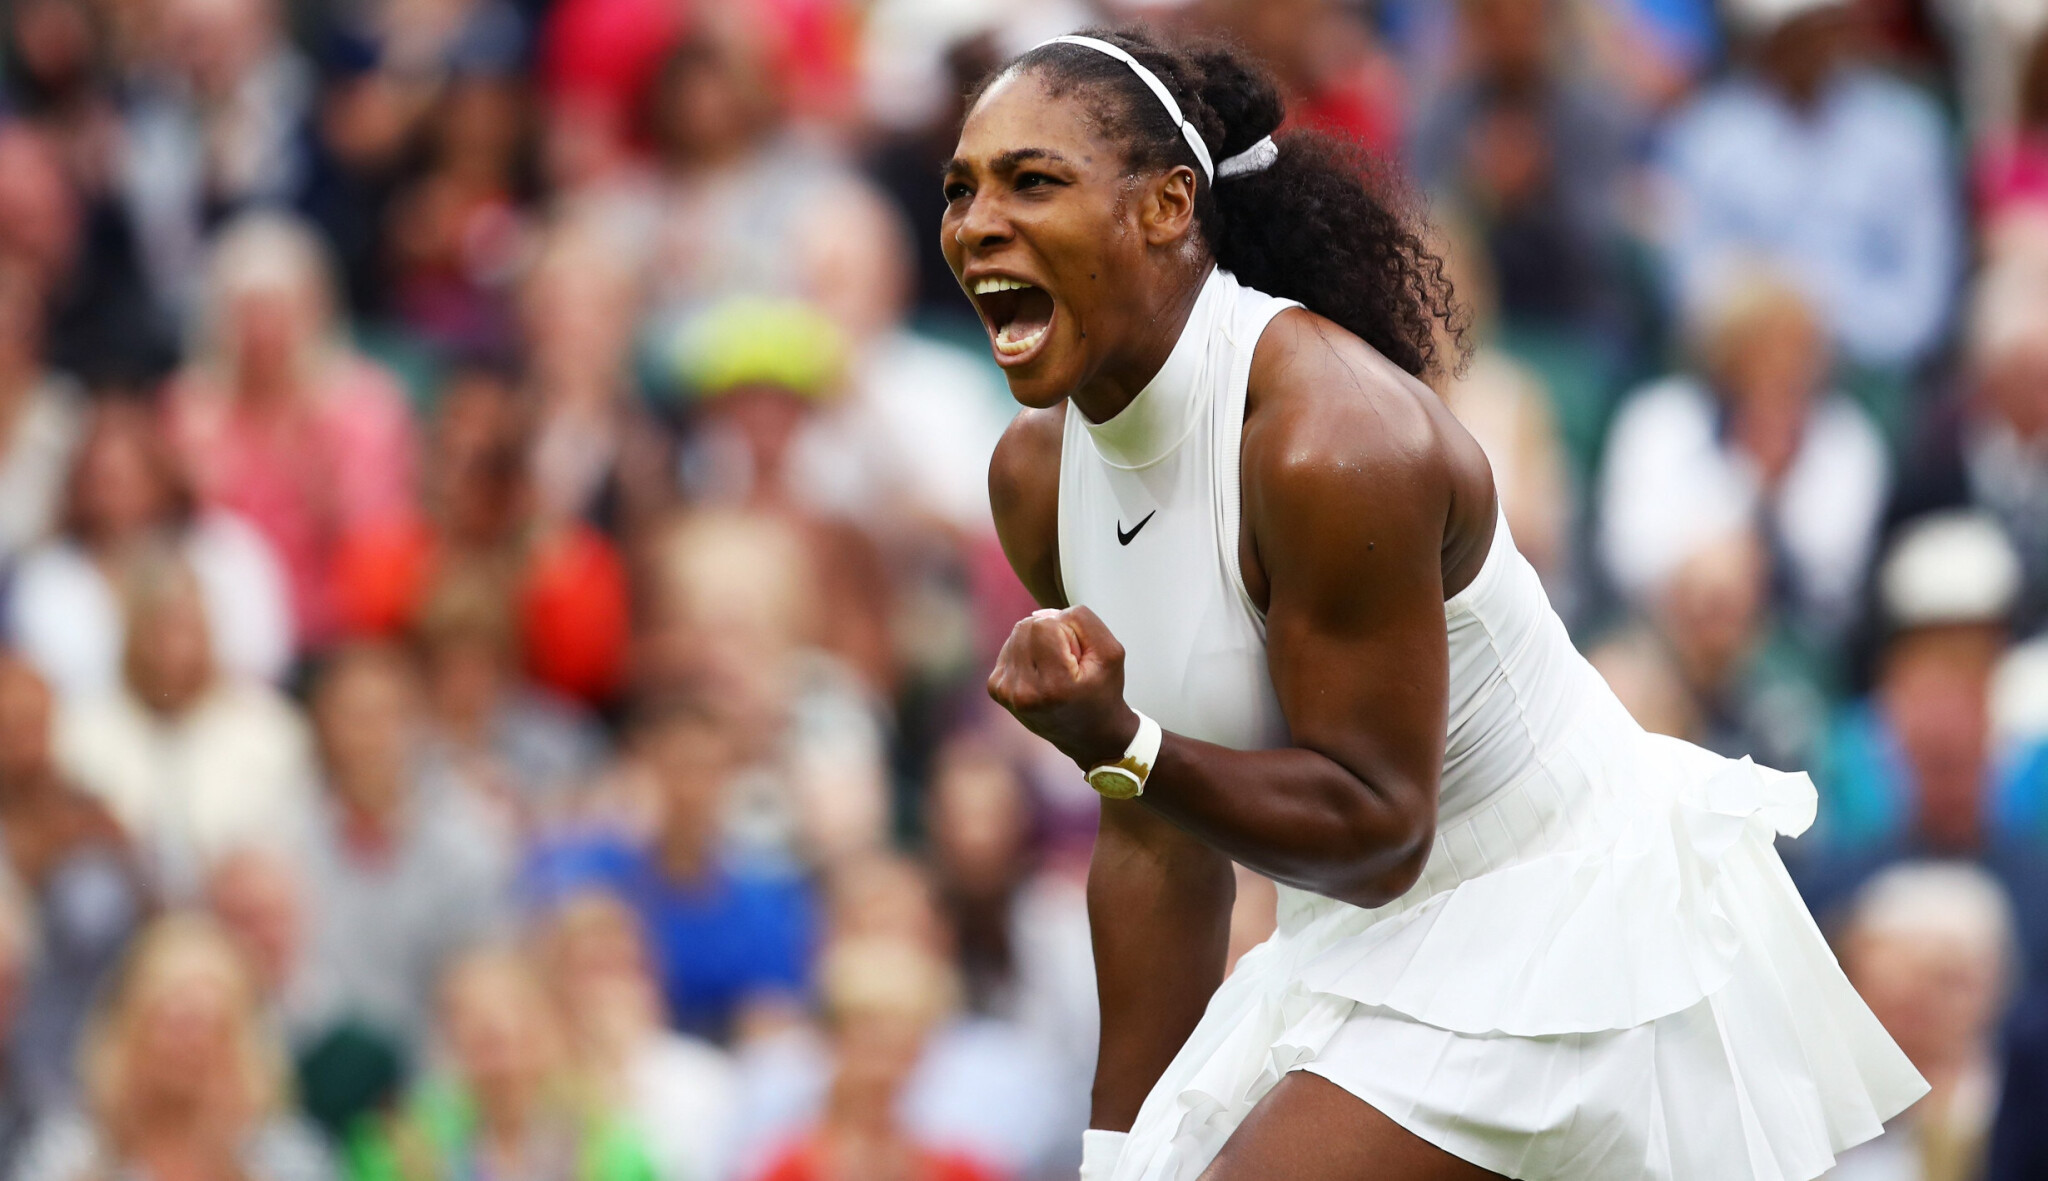 Serena Williams zná vaši bolest po sportování. A zakládá společnost, která ji má zmírnit